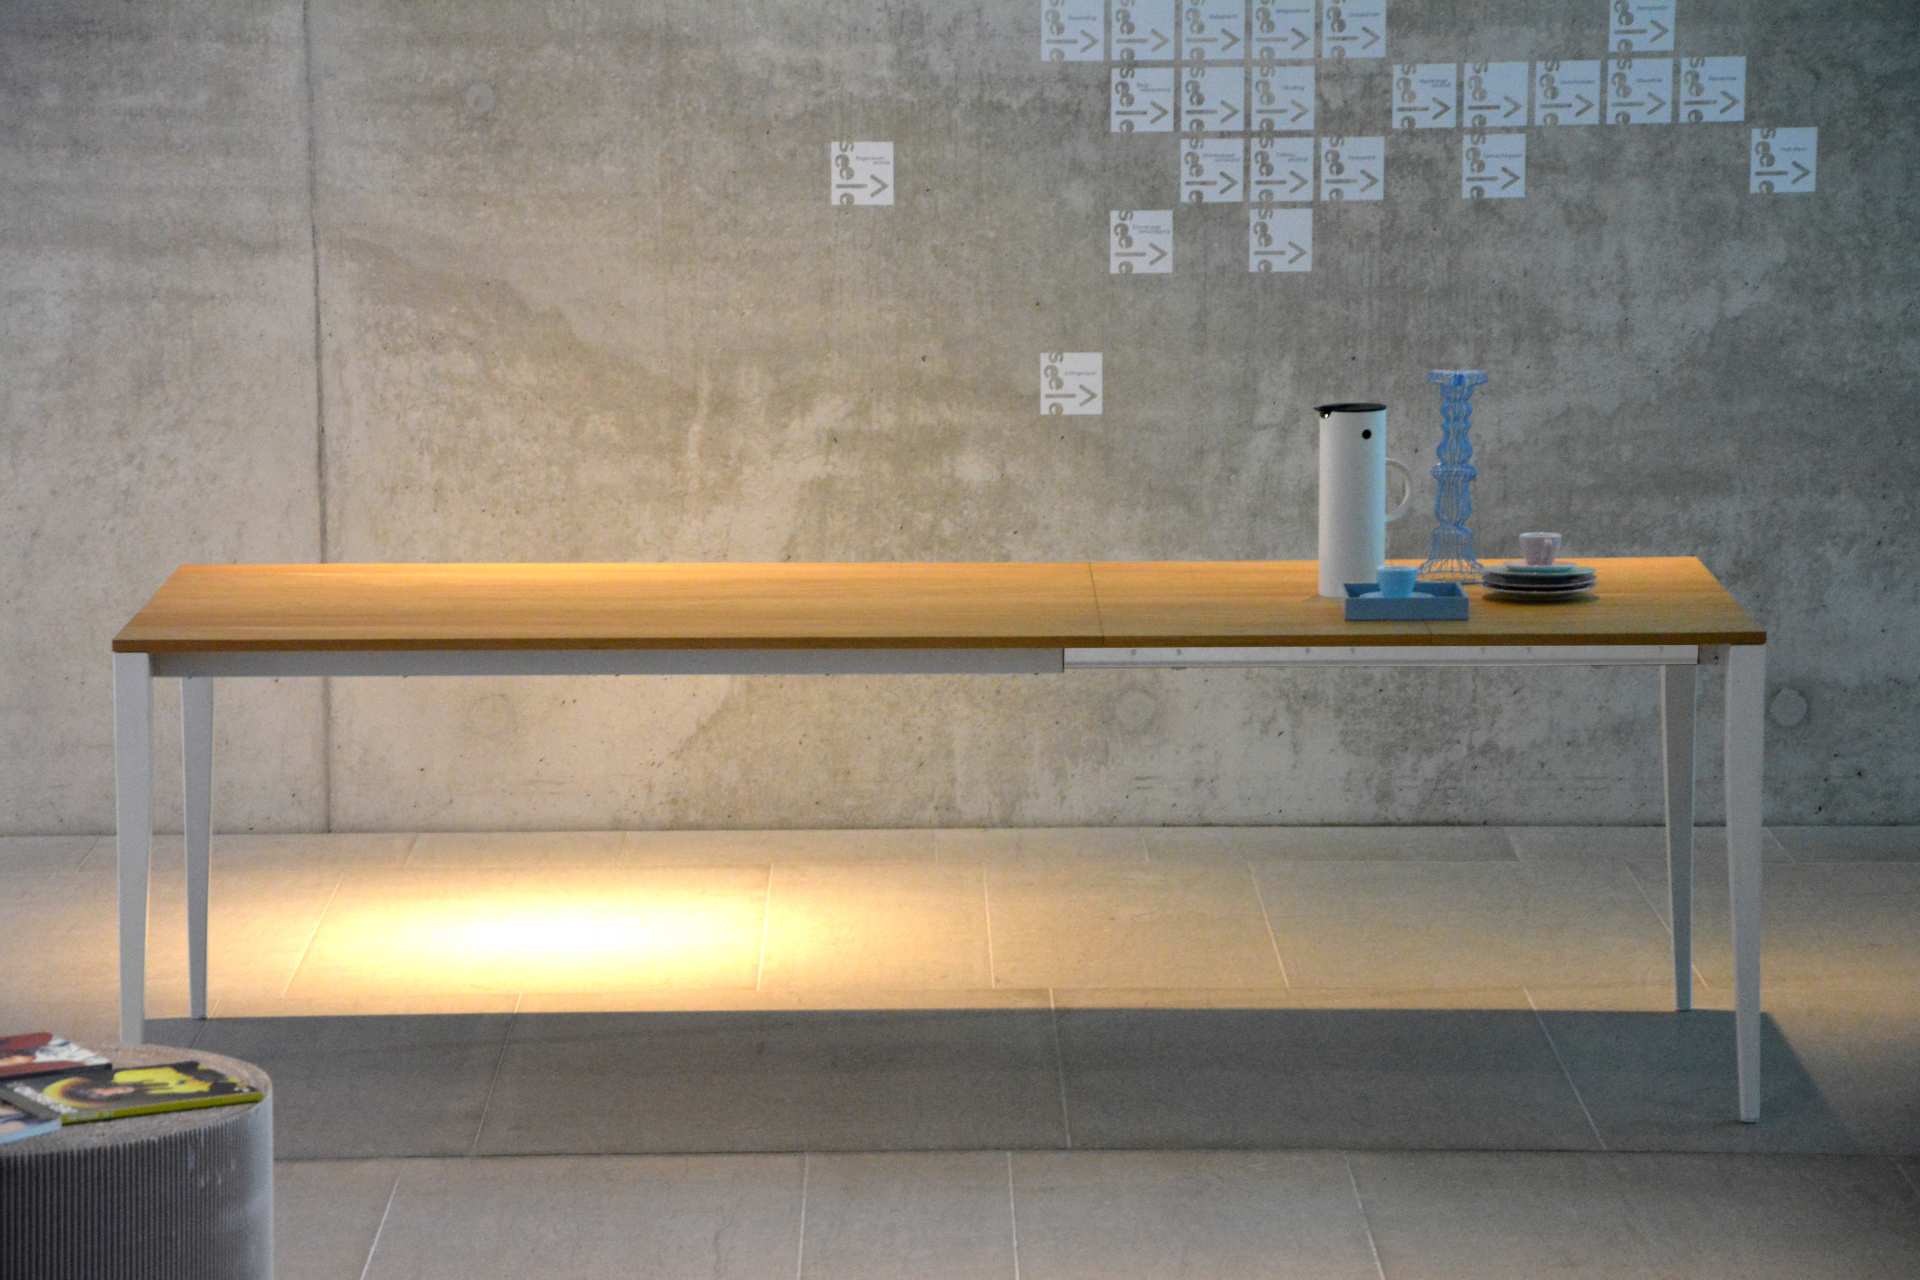 Der schoene Esstisch Jupiter von der Marke Jan Kurtz ist ausziehbar. Der Tisch besitzt ein weißes Metall Gestell mit einer Tischplatte in Eichenholz Optik.